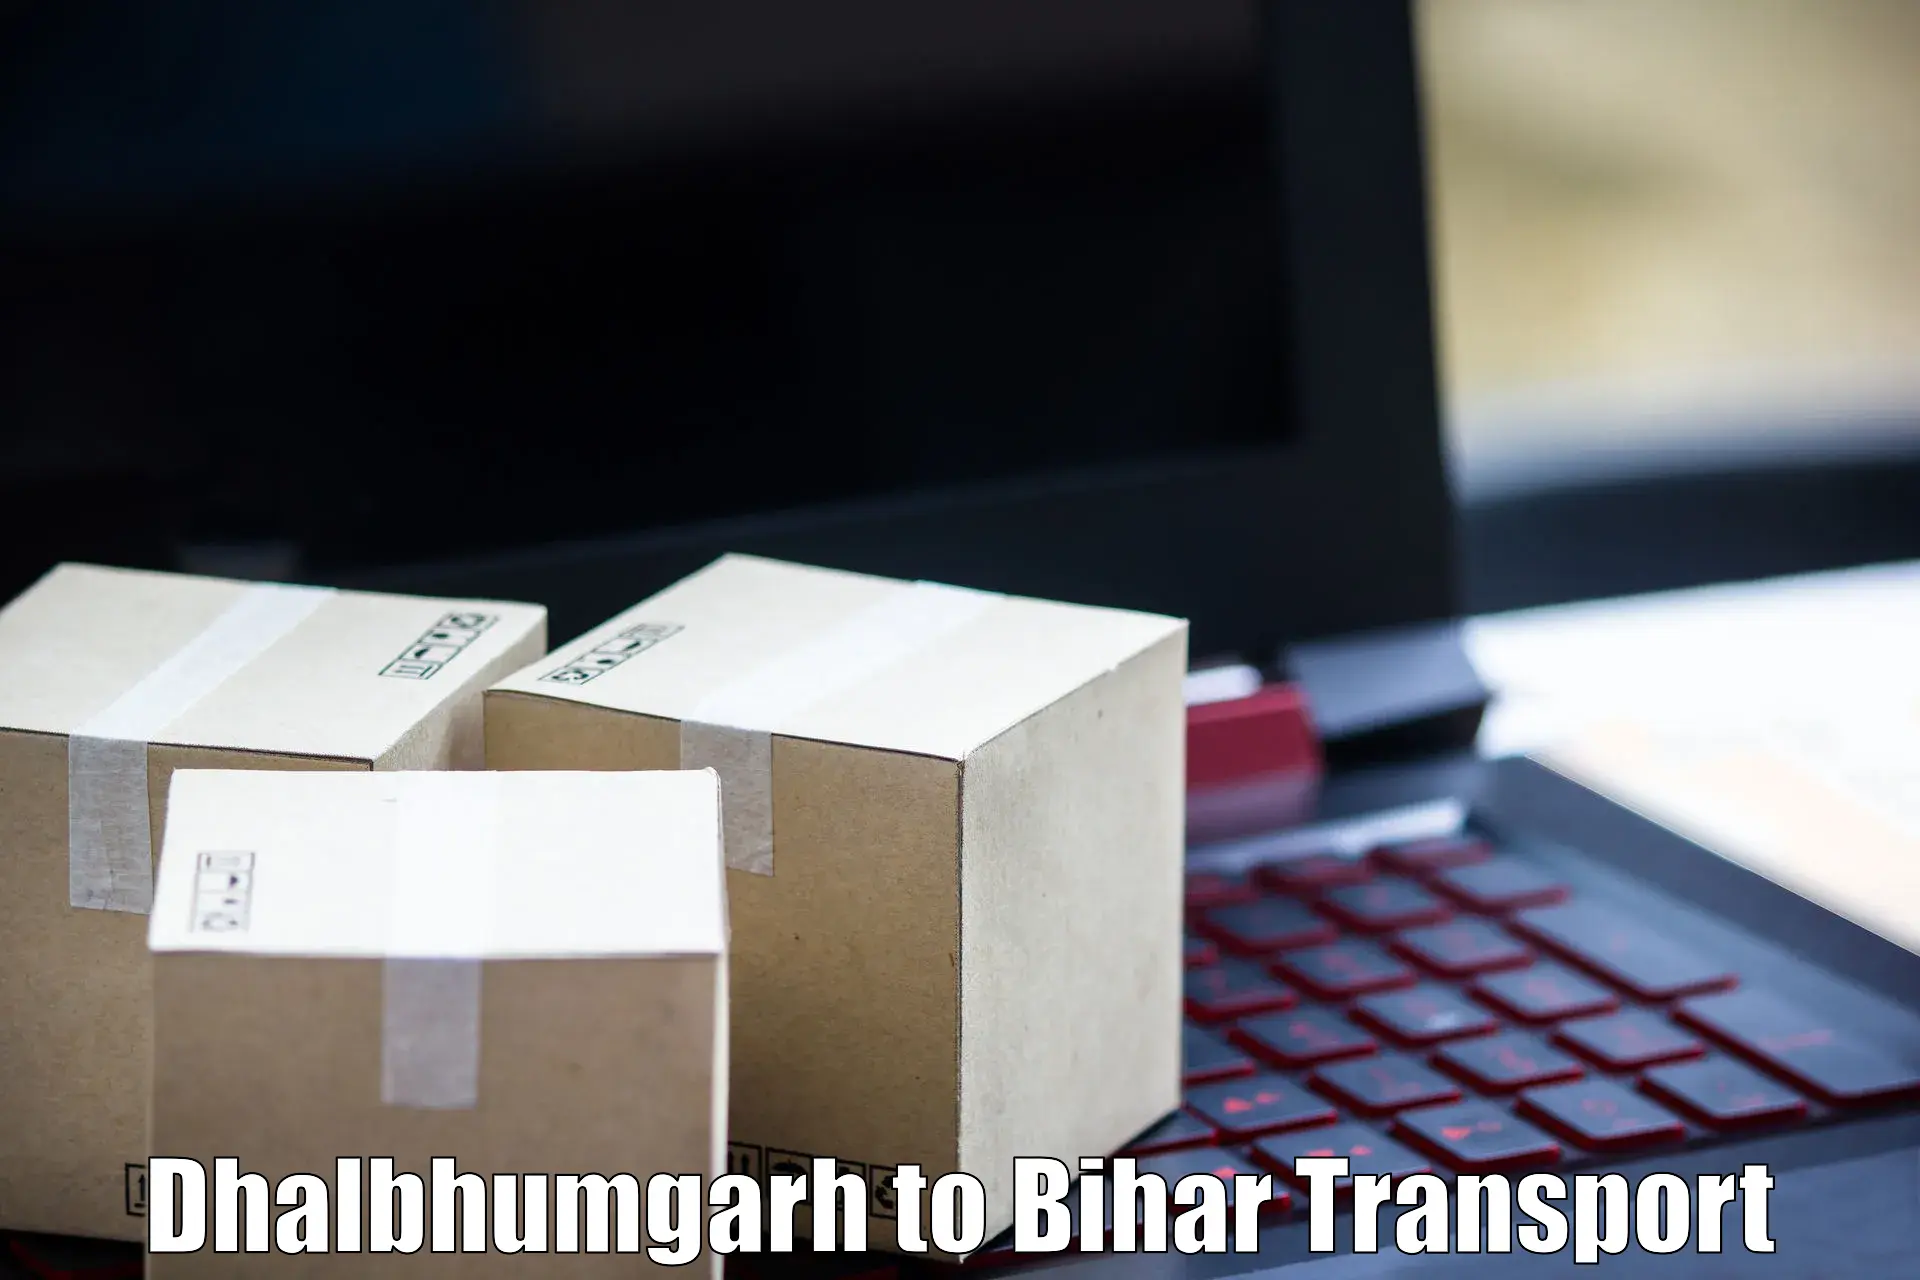 Online transport Dhalbhumgarh to Bihta